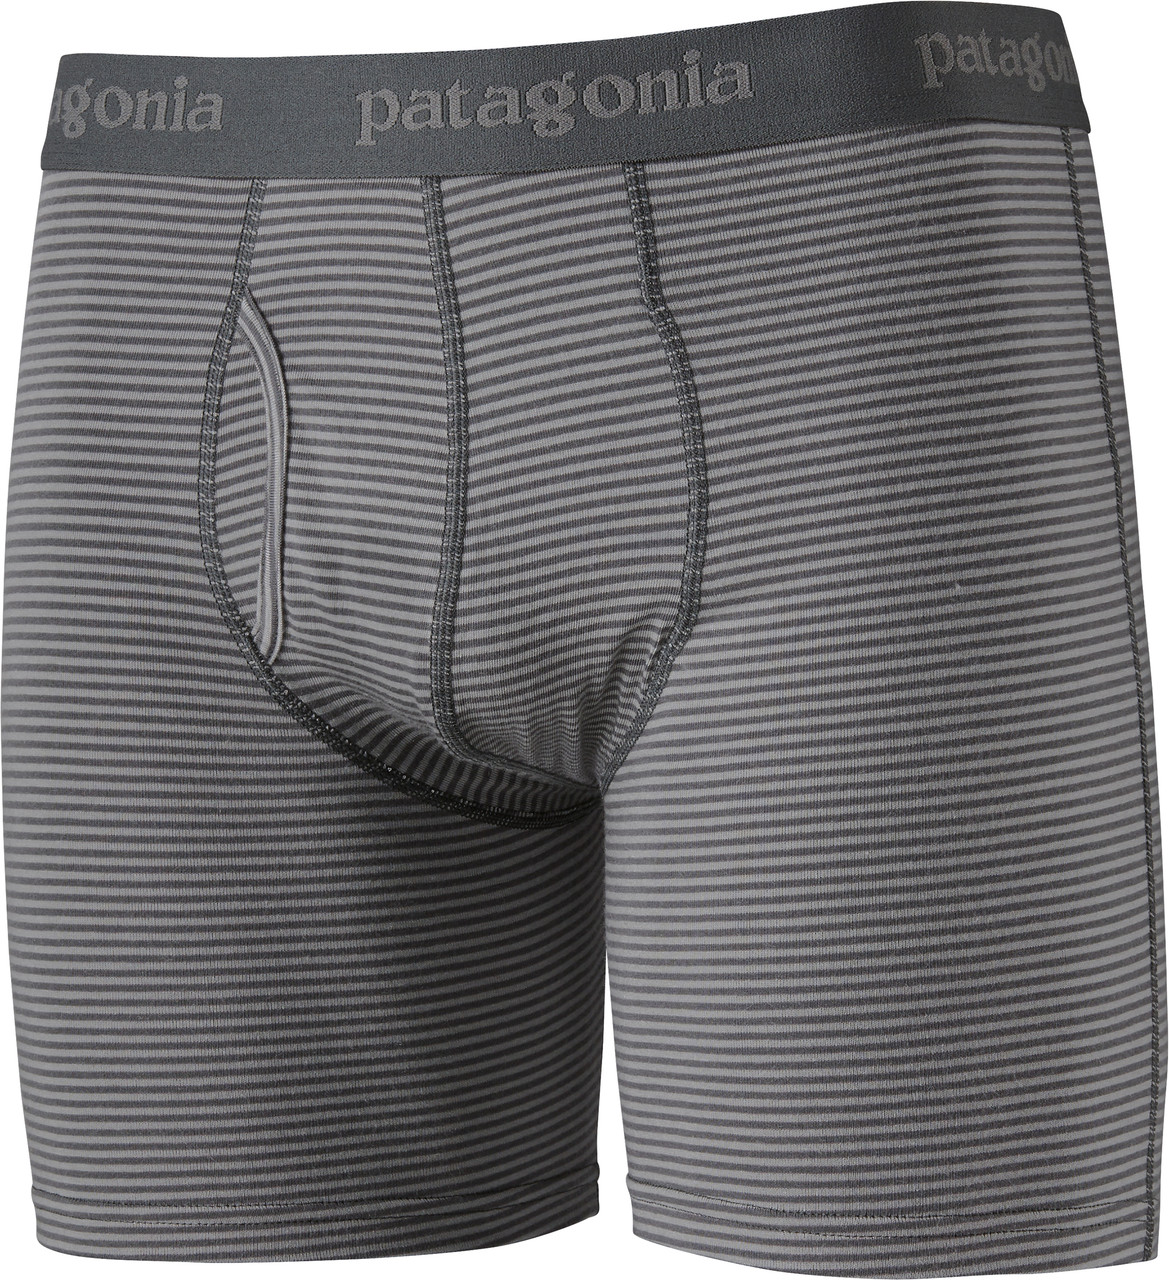 Patagonia Men's Essential Boxer Briefs - 3 Inseam